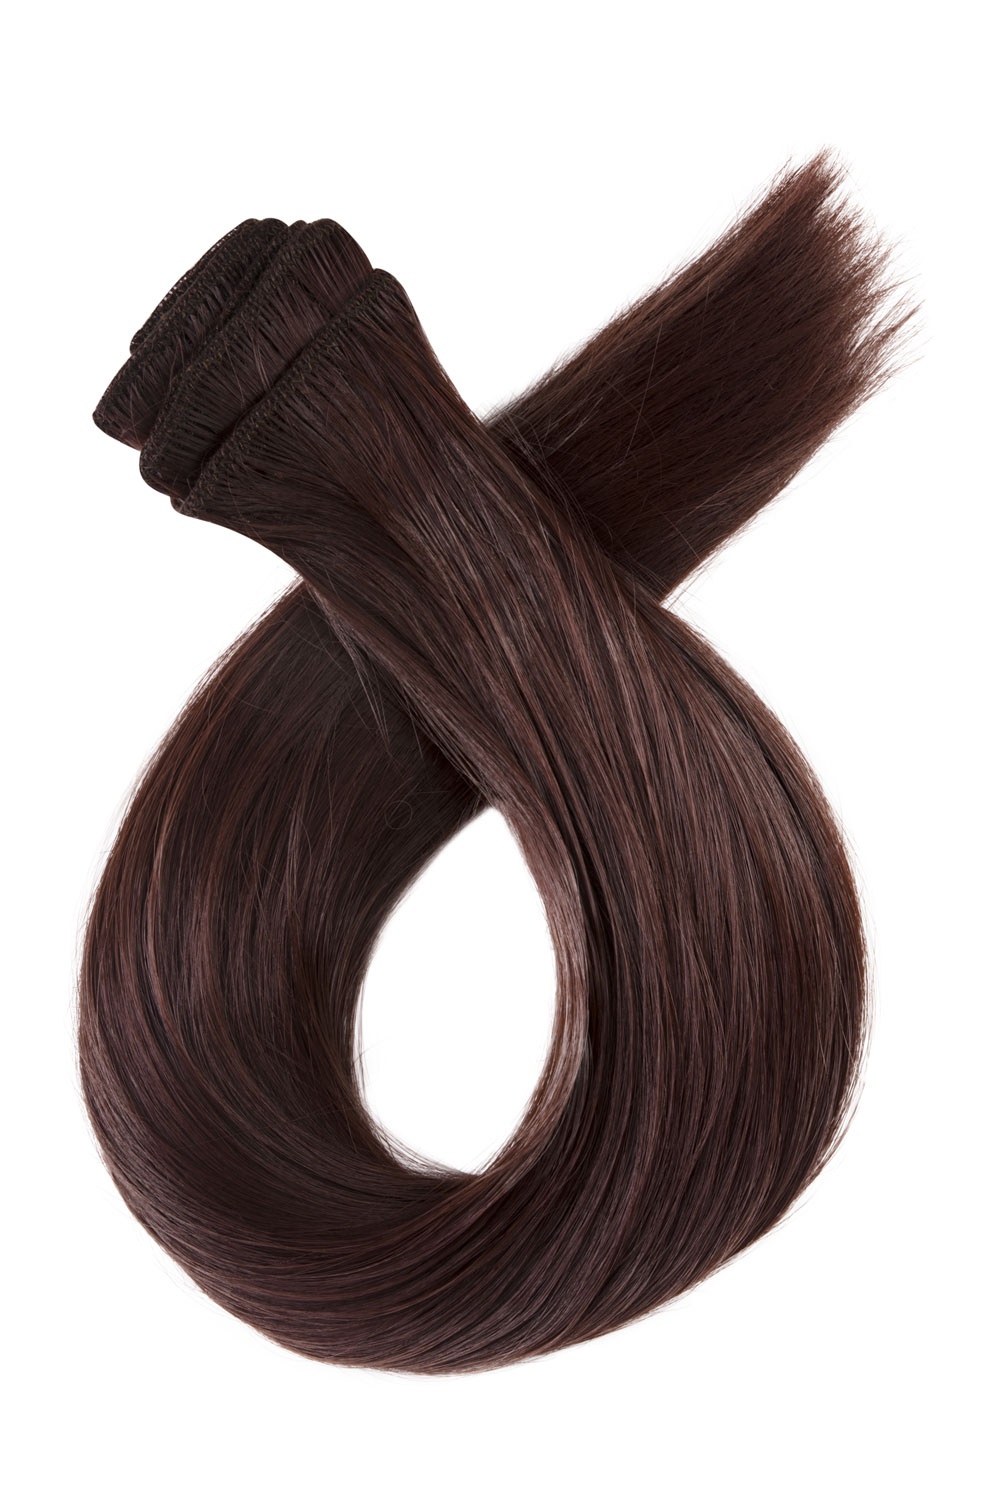 Tmavé červenohnedé clip in vlasy, 60cm, 115g, farba 33